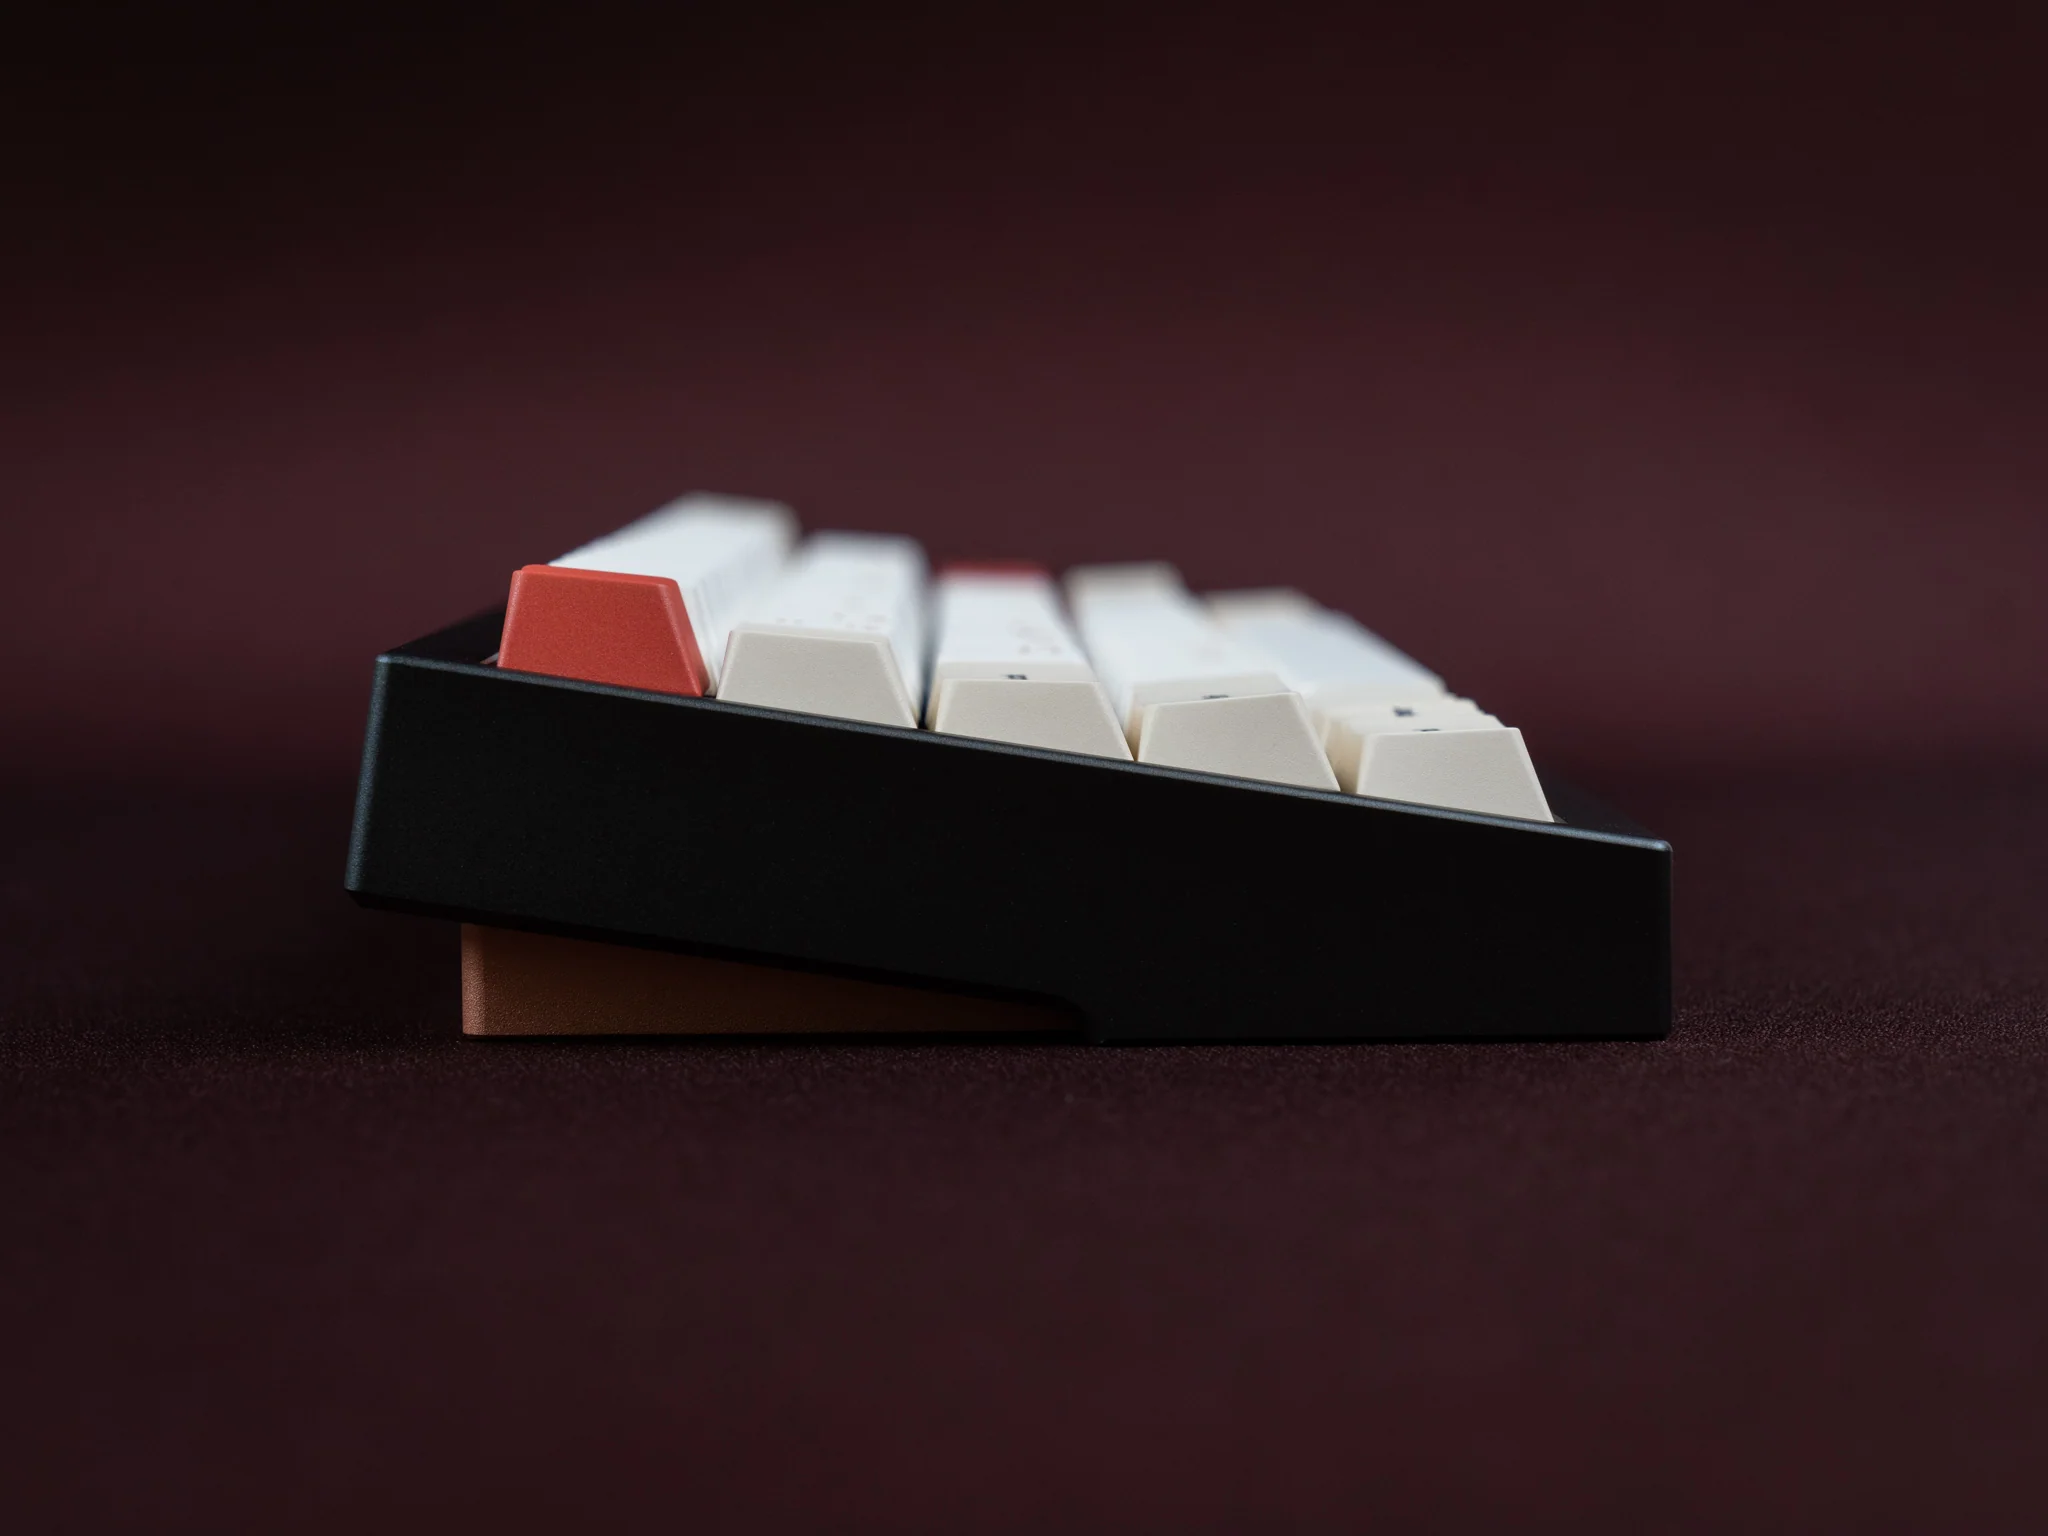 [Extra GB] Leviatán Keyboard Kit